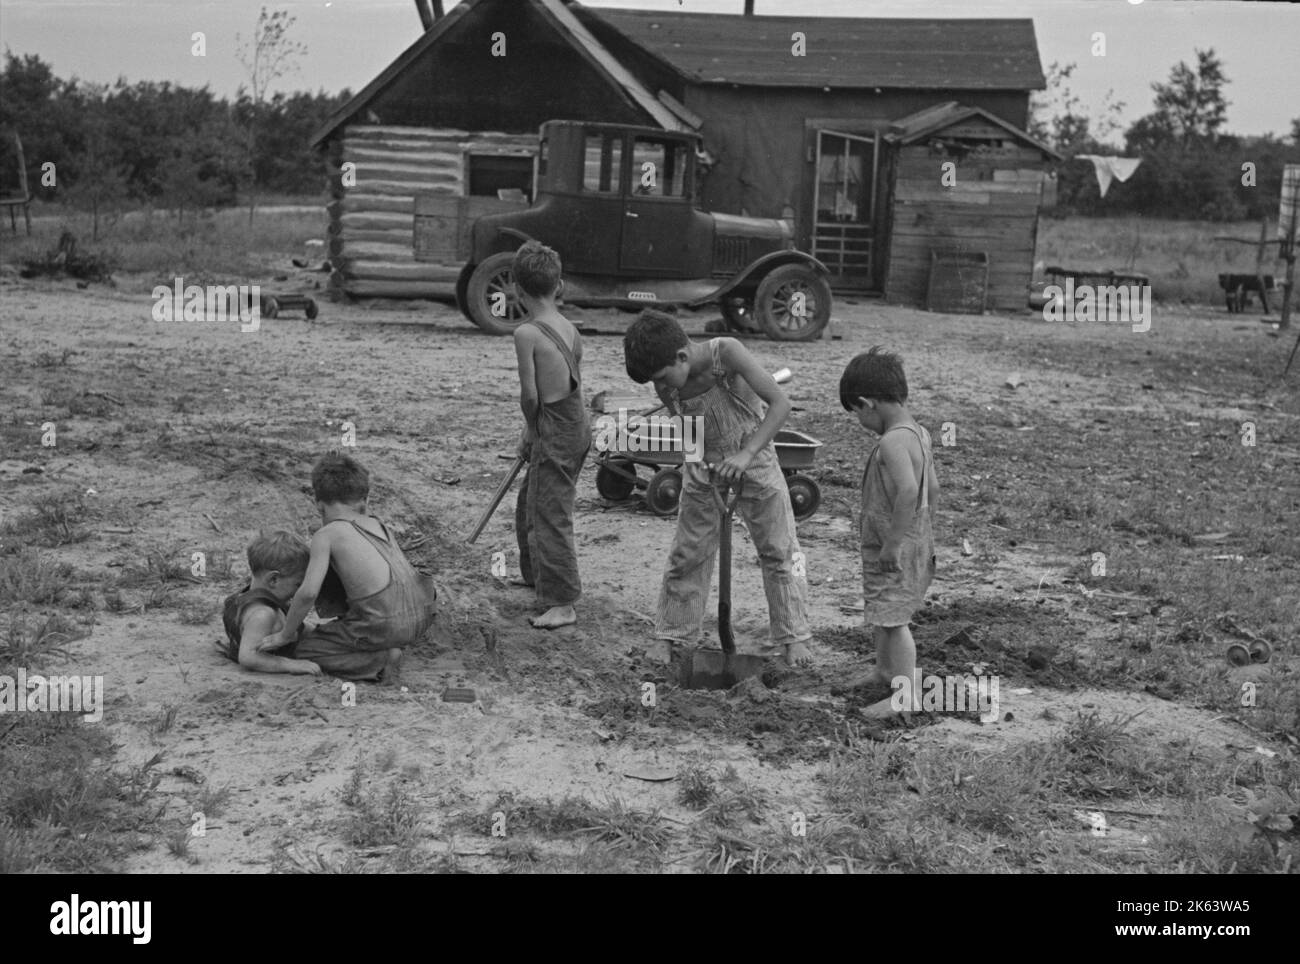 Les enfants d'Art Simplot, près de Black River Falls, Wisconsin. Date 1937 juin. Banque D'Images